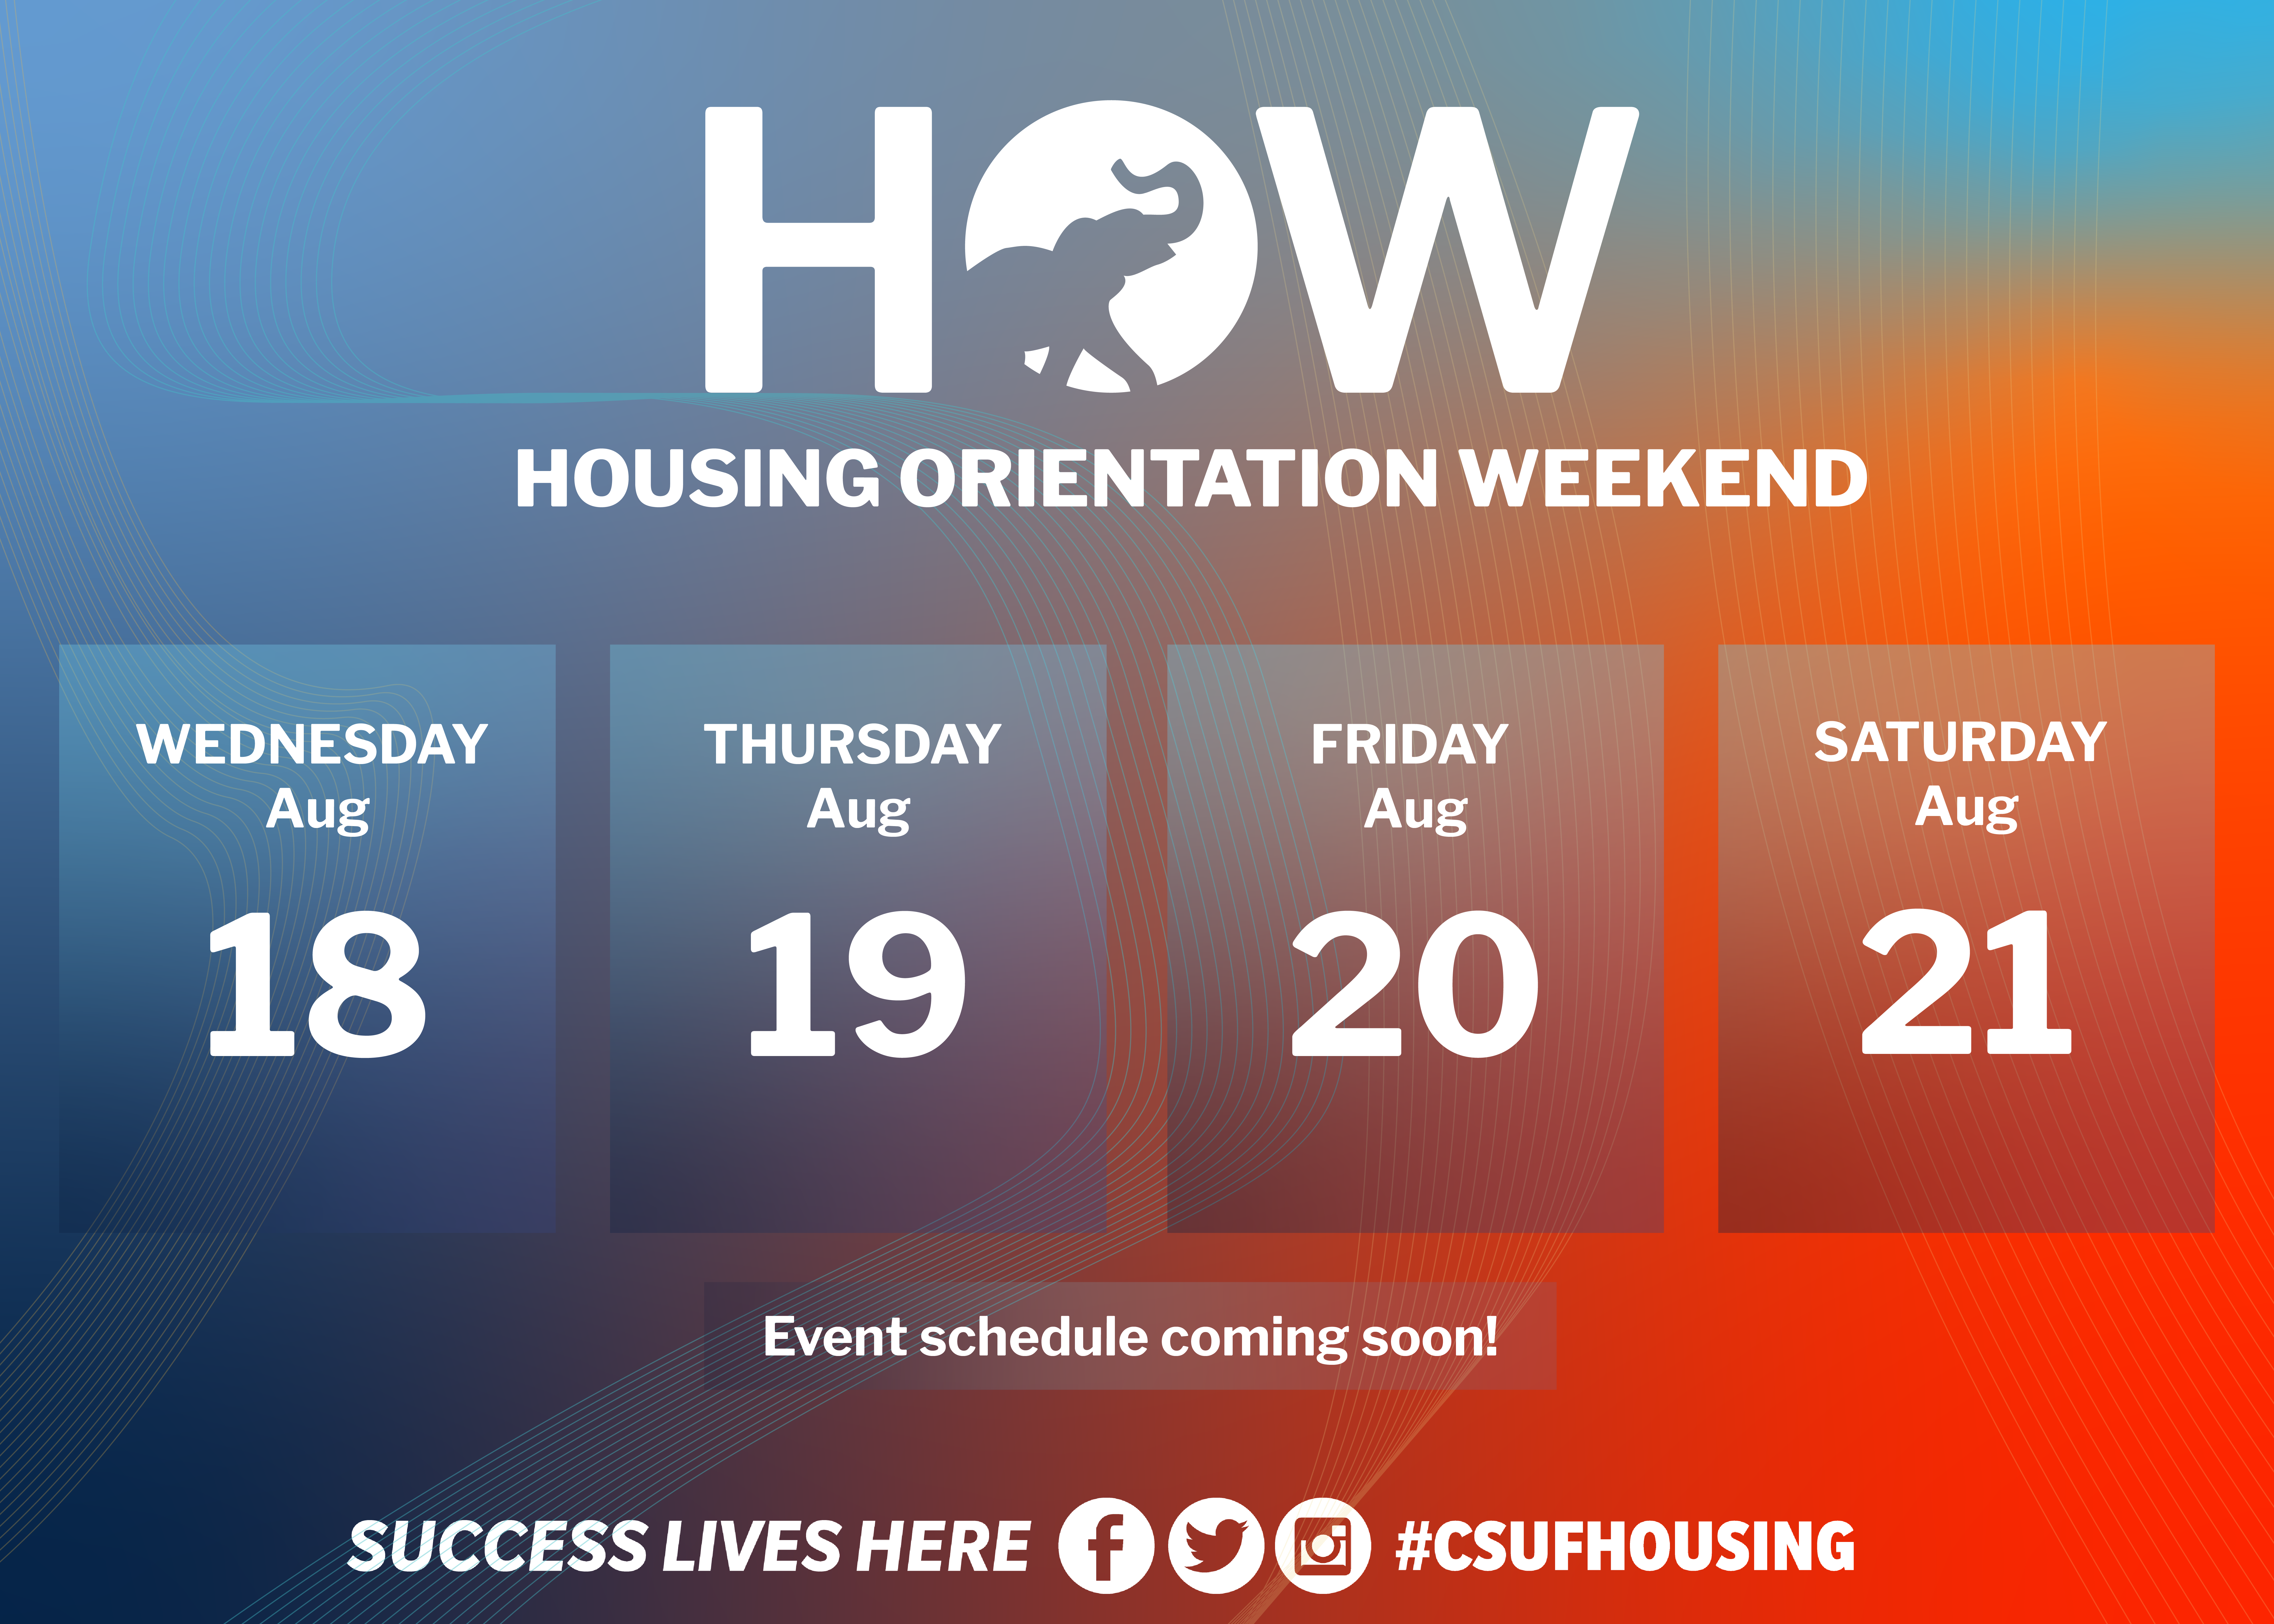 housing orientation week 2021 schedule coming soon